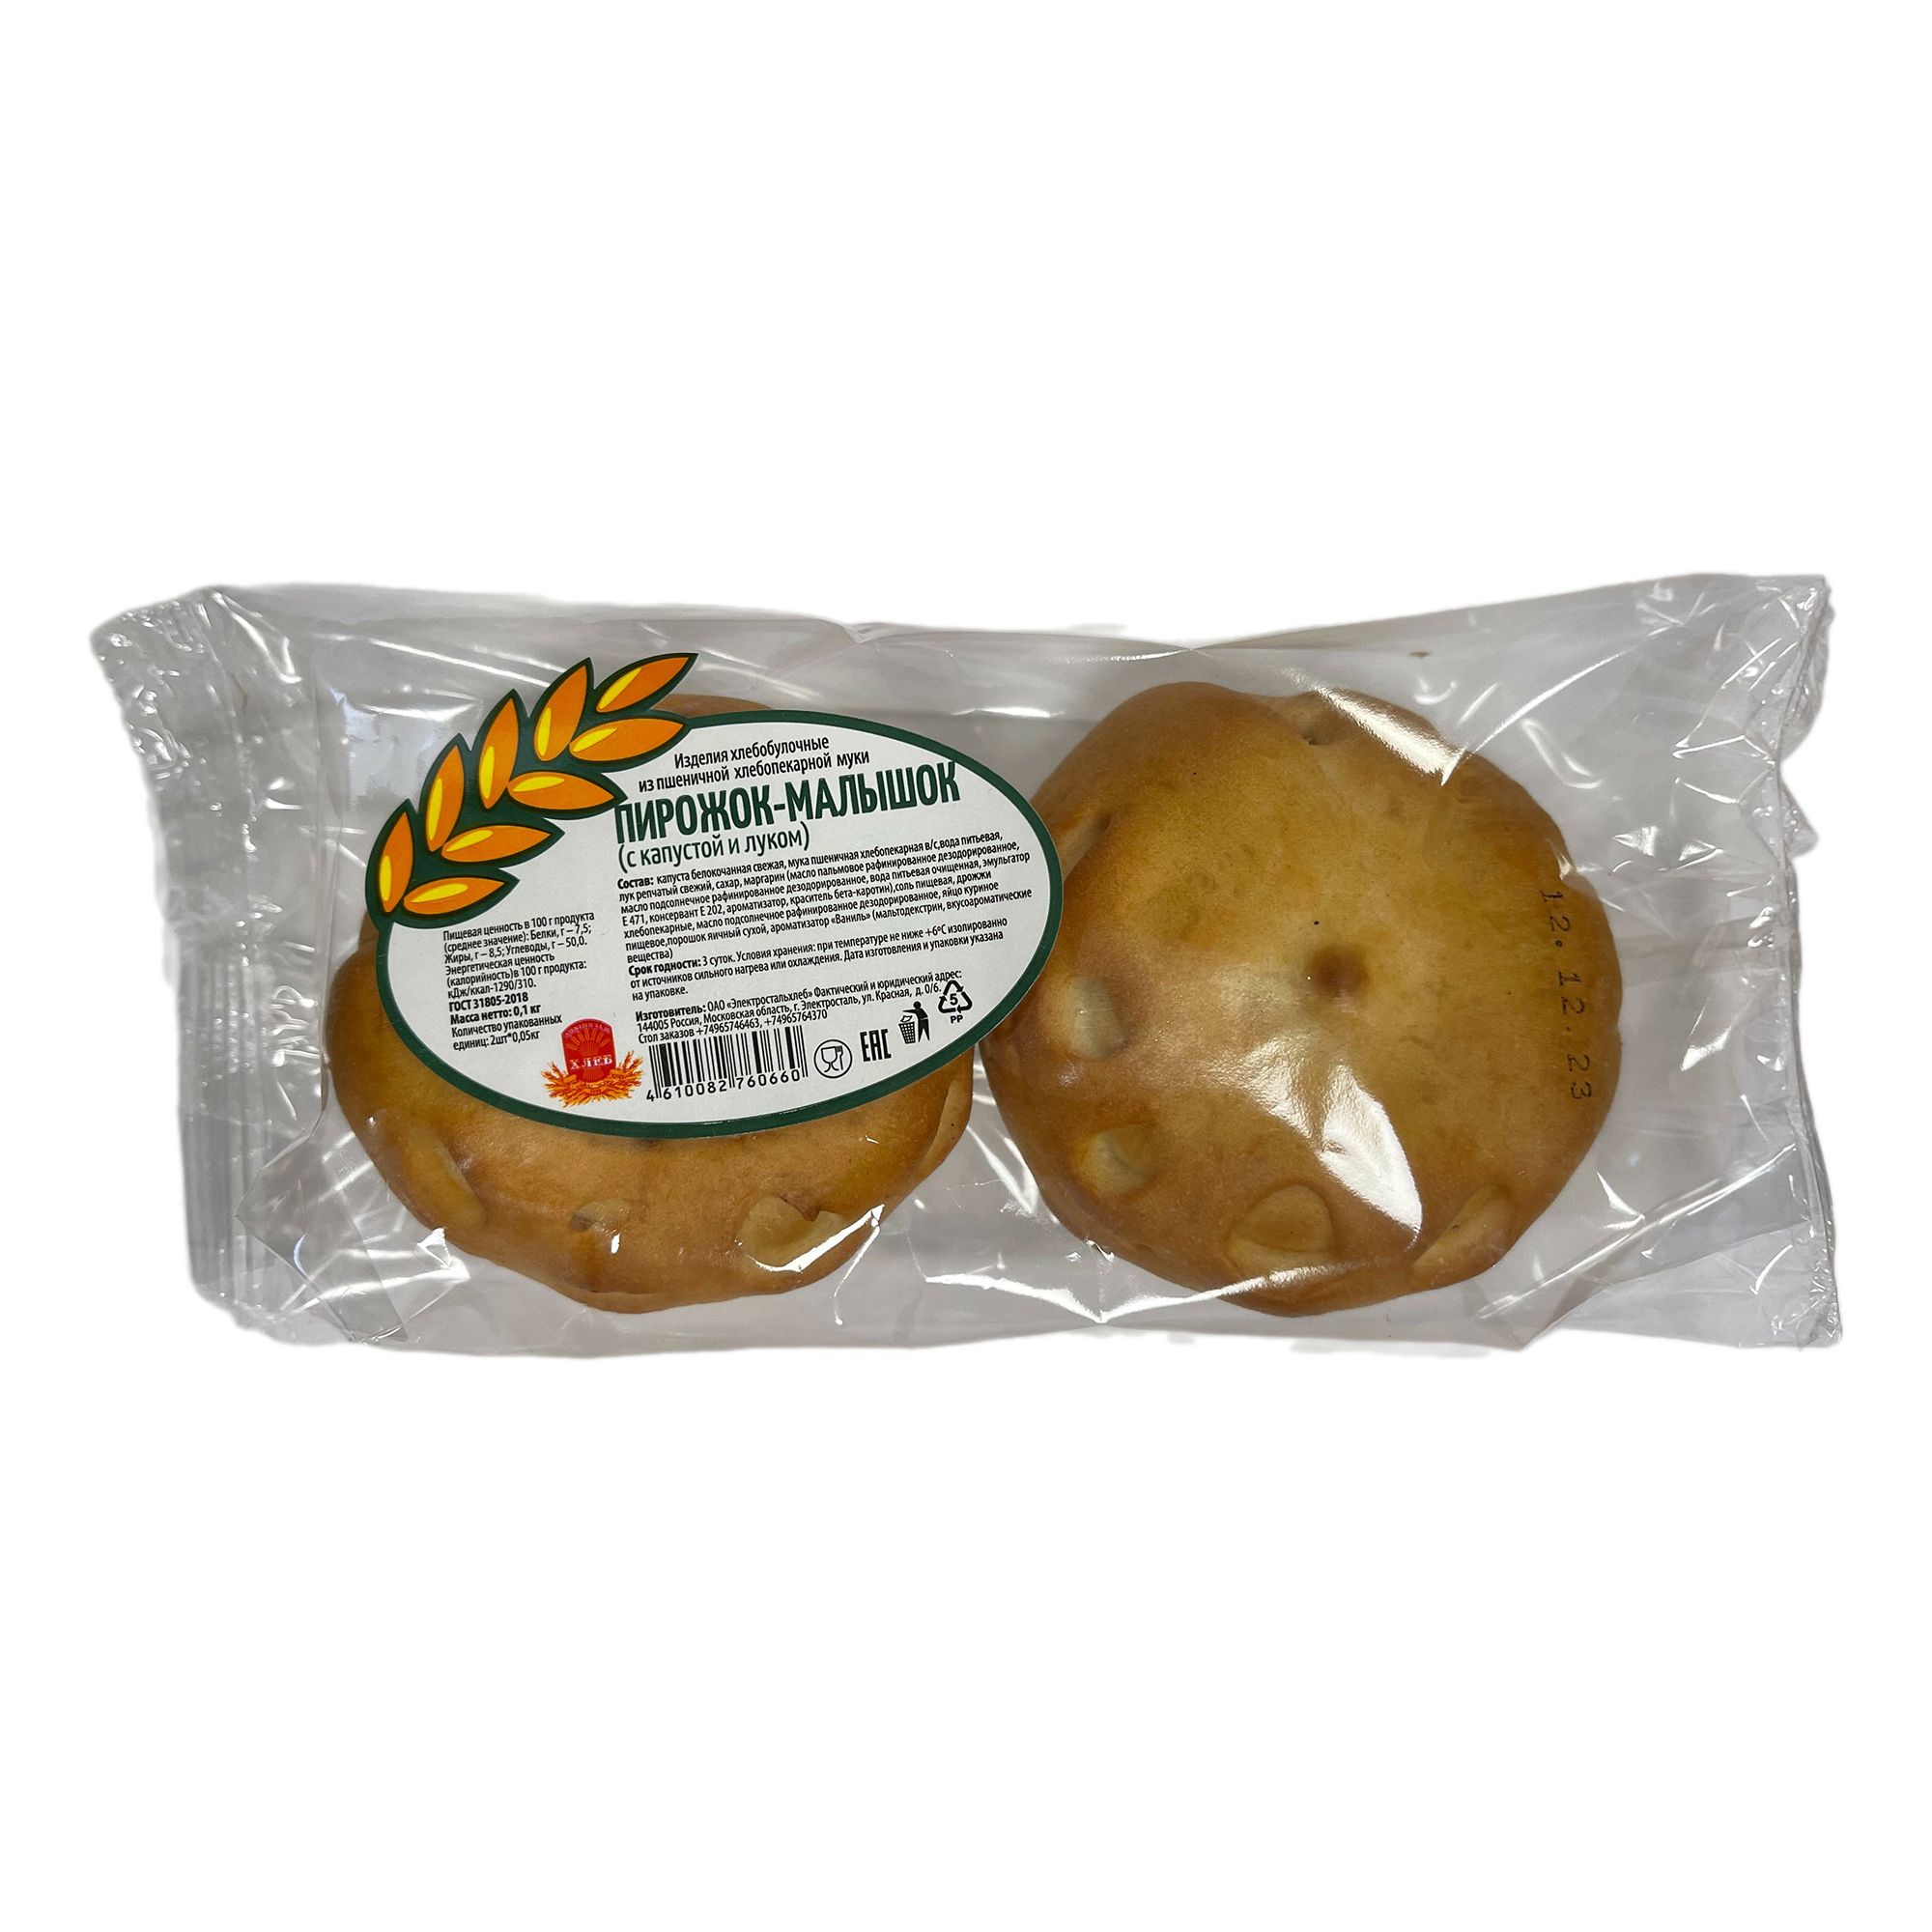 Пирожок-малышок Электросталь хлеб с капустой и луком 50 г х 2 шт